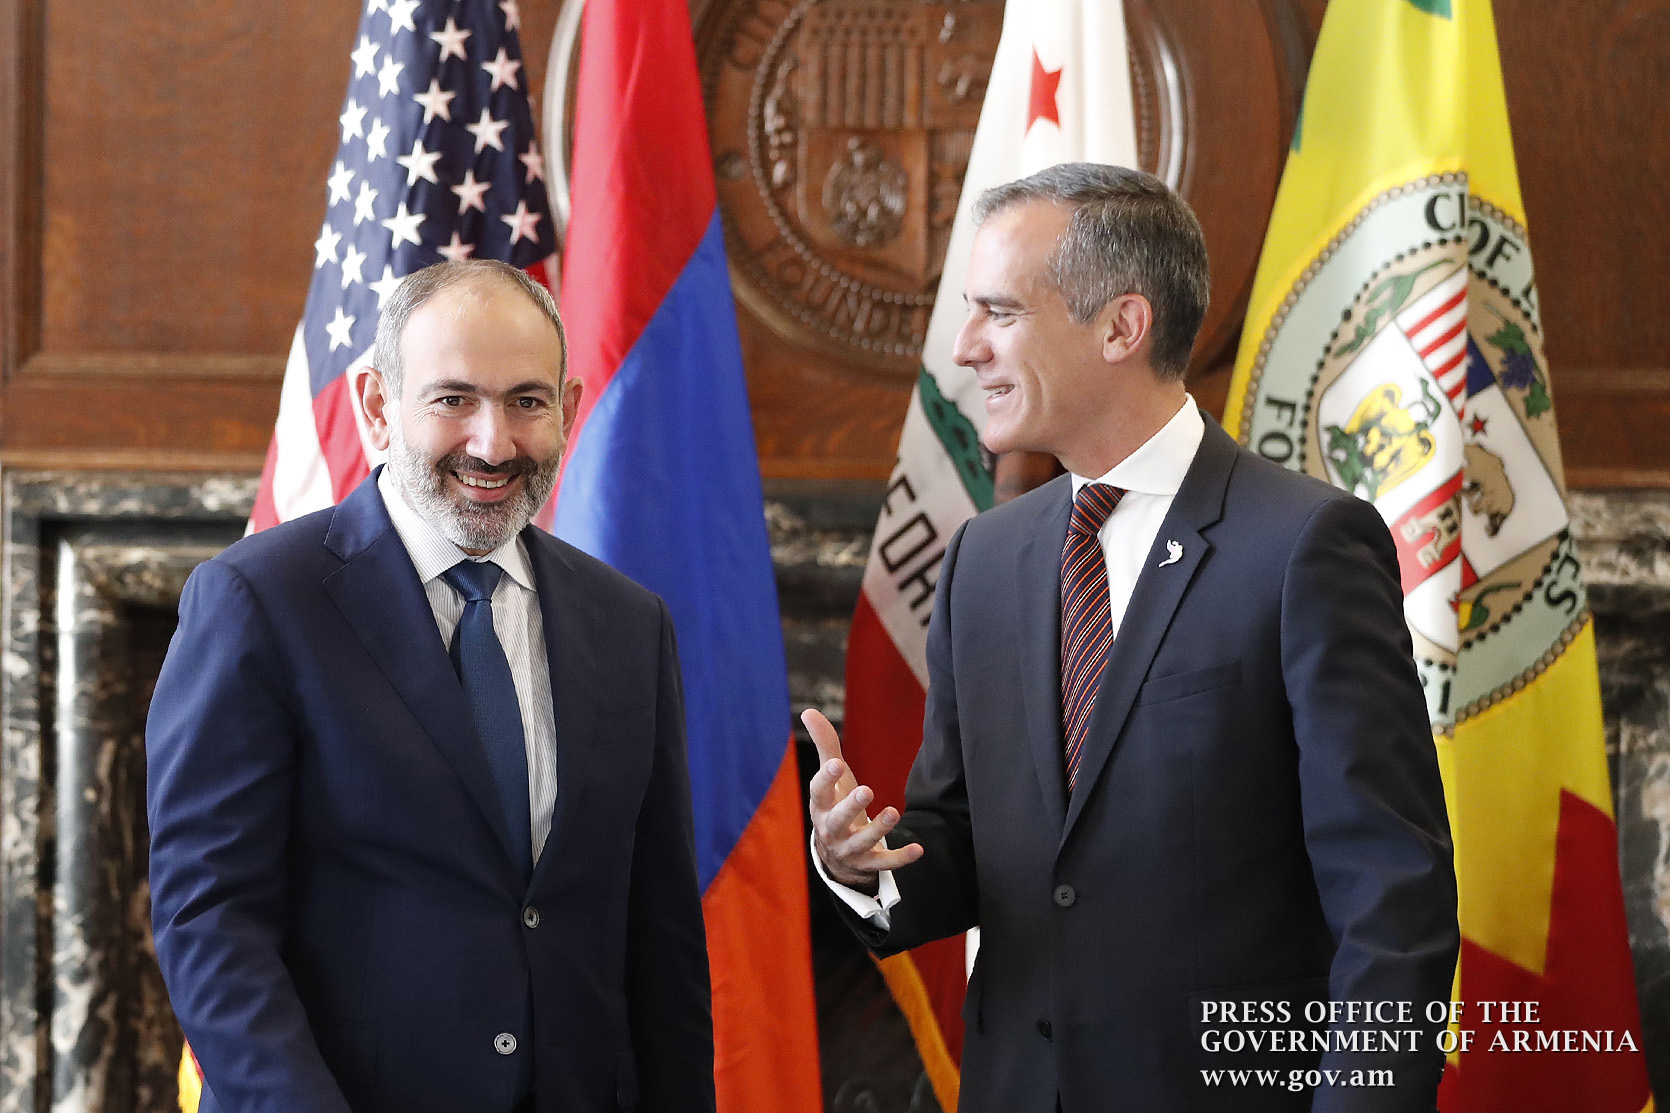 Армения продвигается вперед путем демократии, и опыт США для нас очень важен - премьер